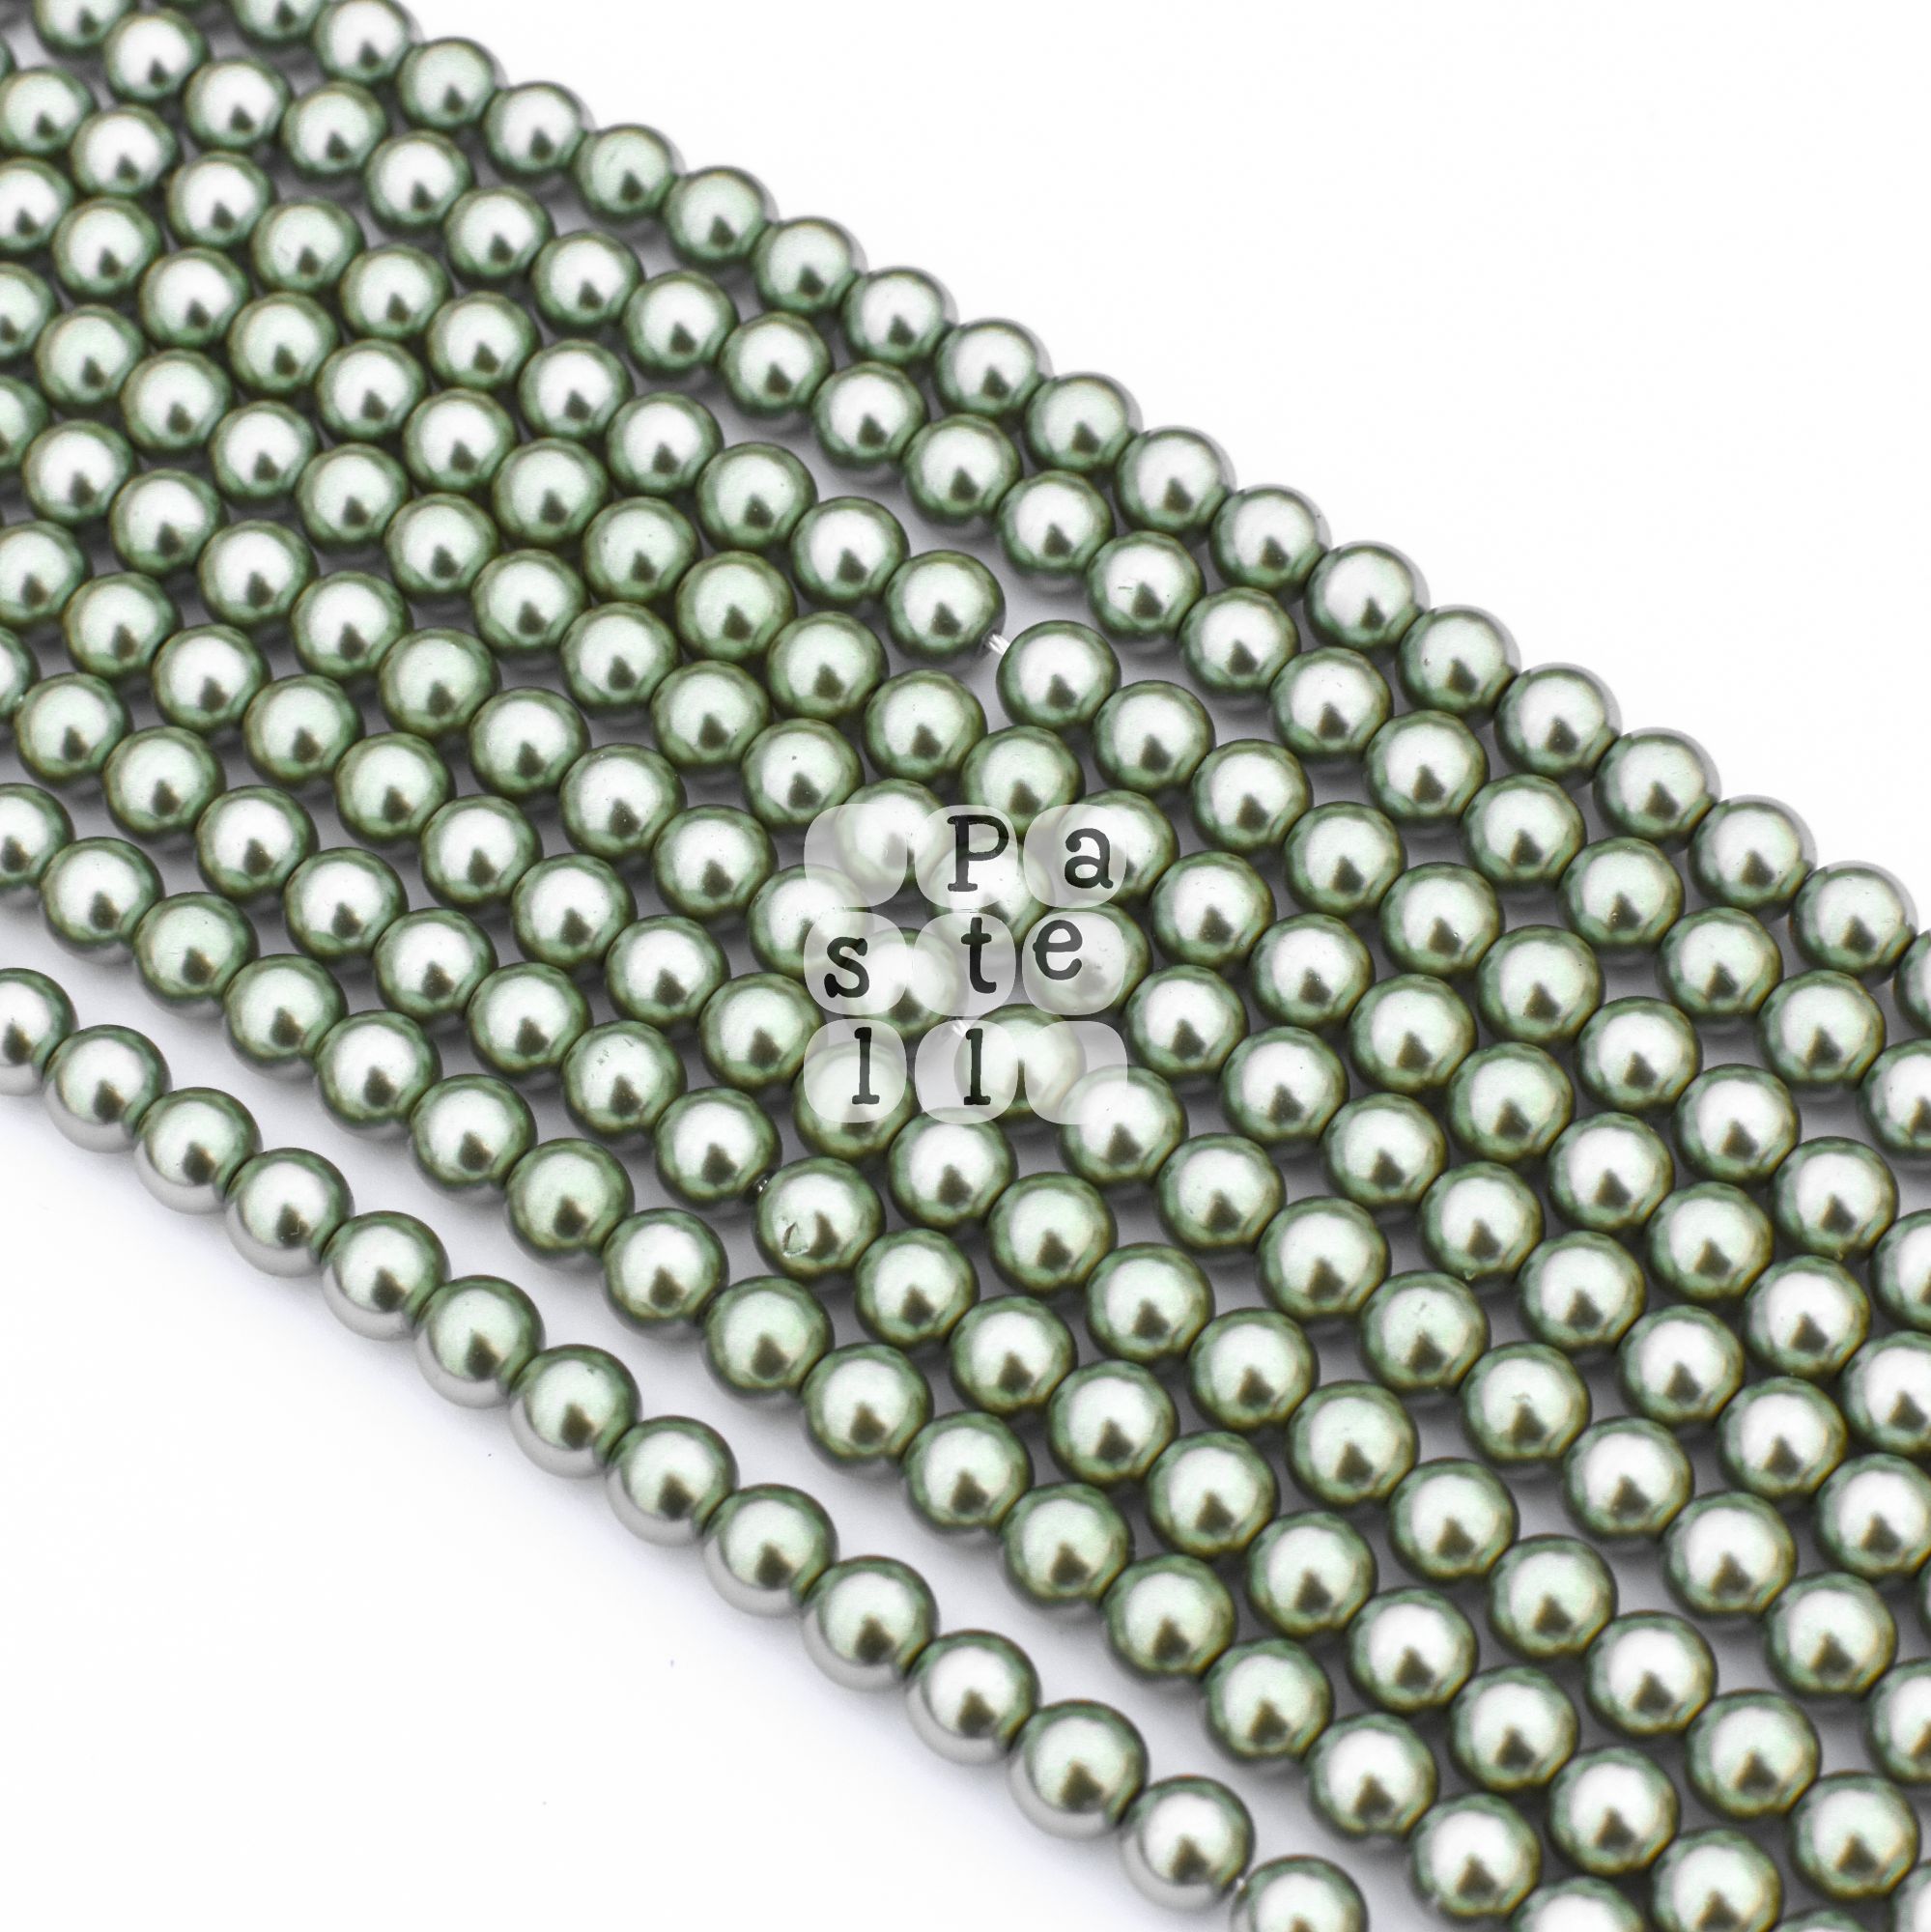 Sklenené perličky, 8 mm - 10 ks